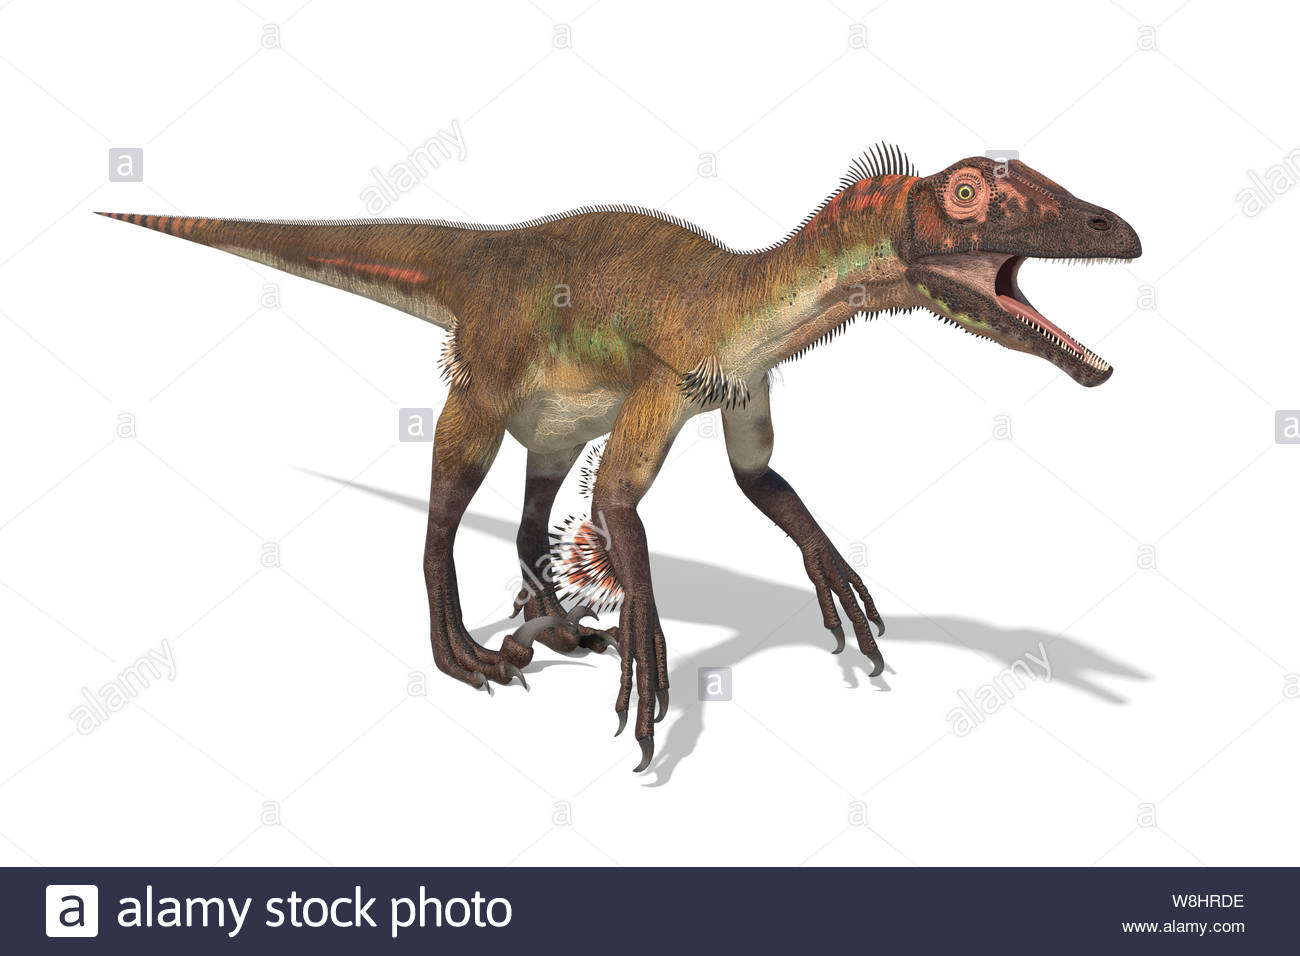 Utahraptor Dinosaur Against White Background Illustration These